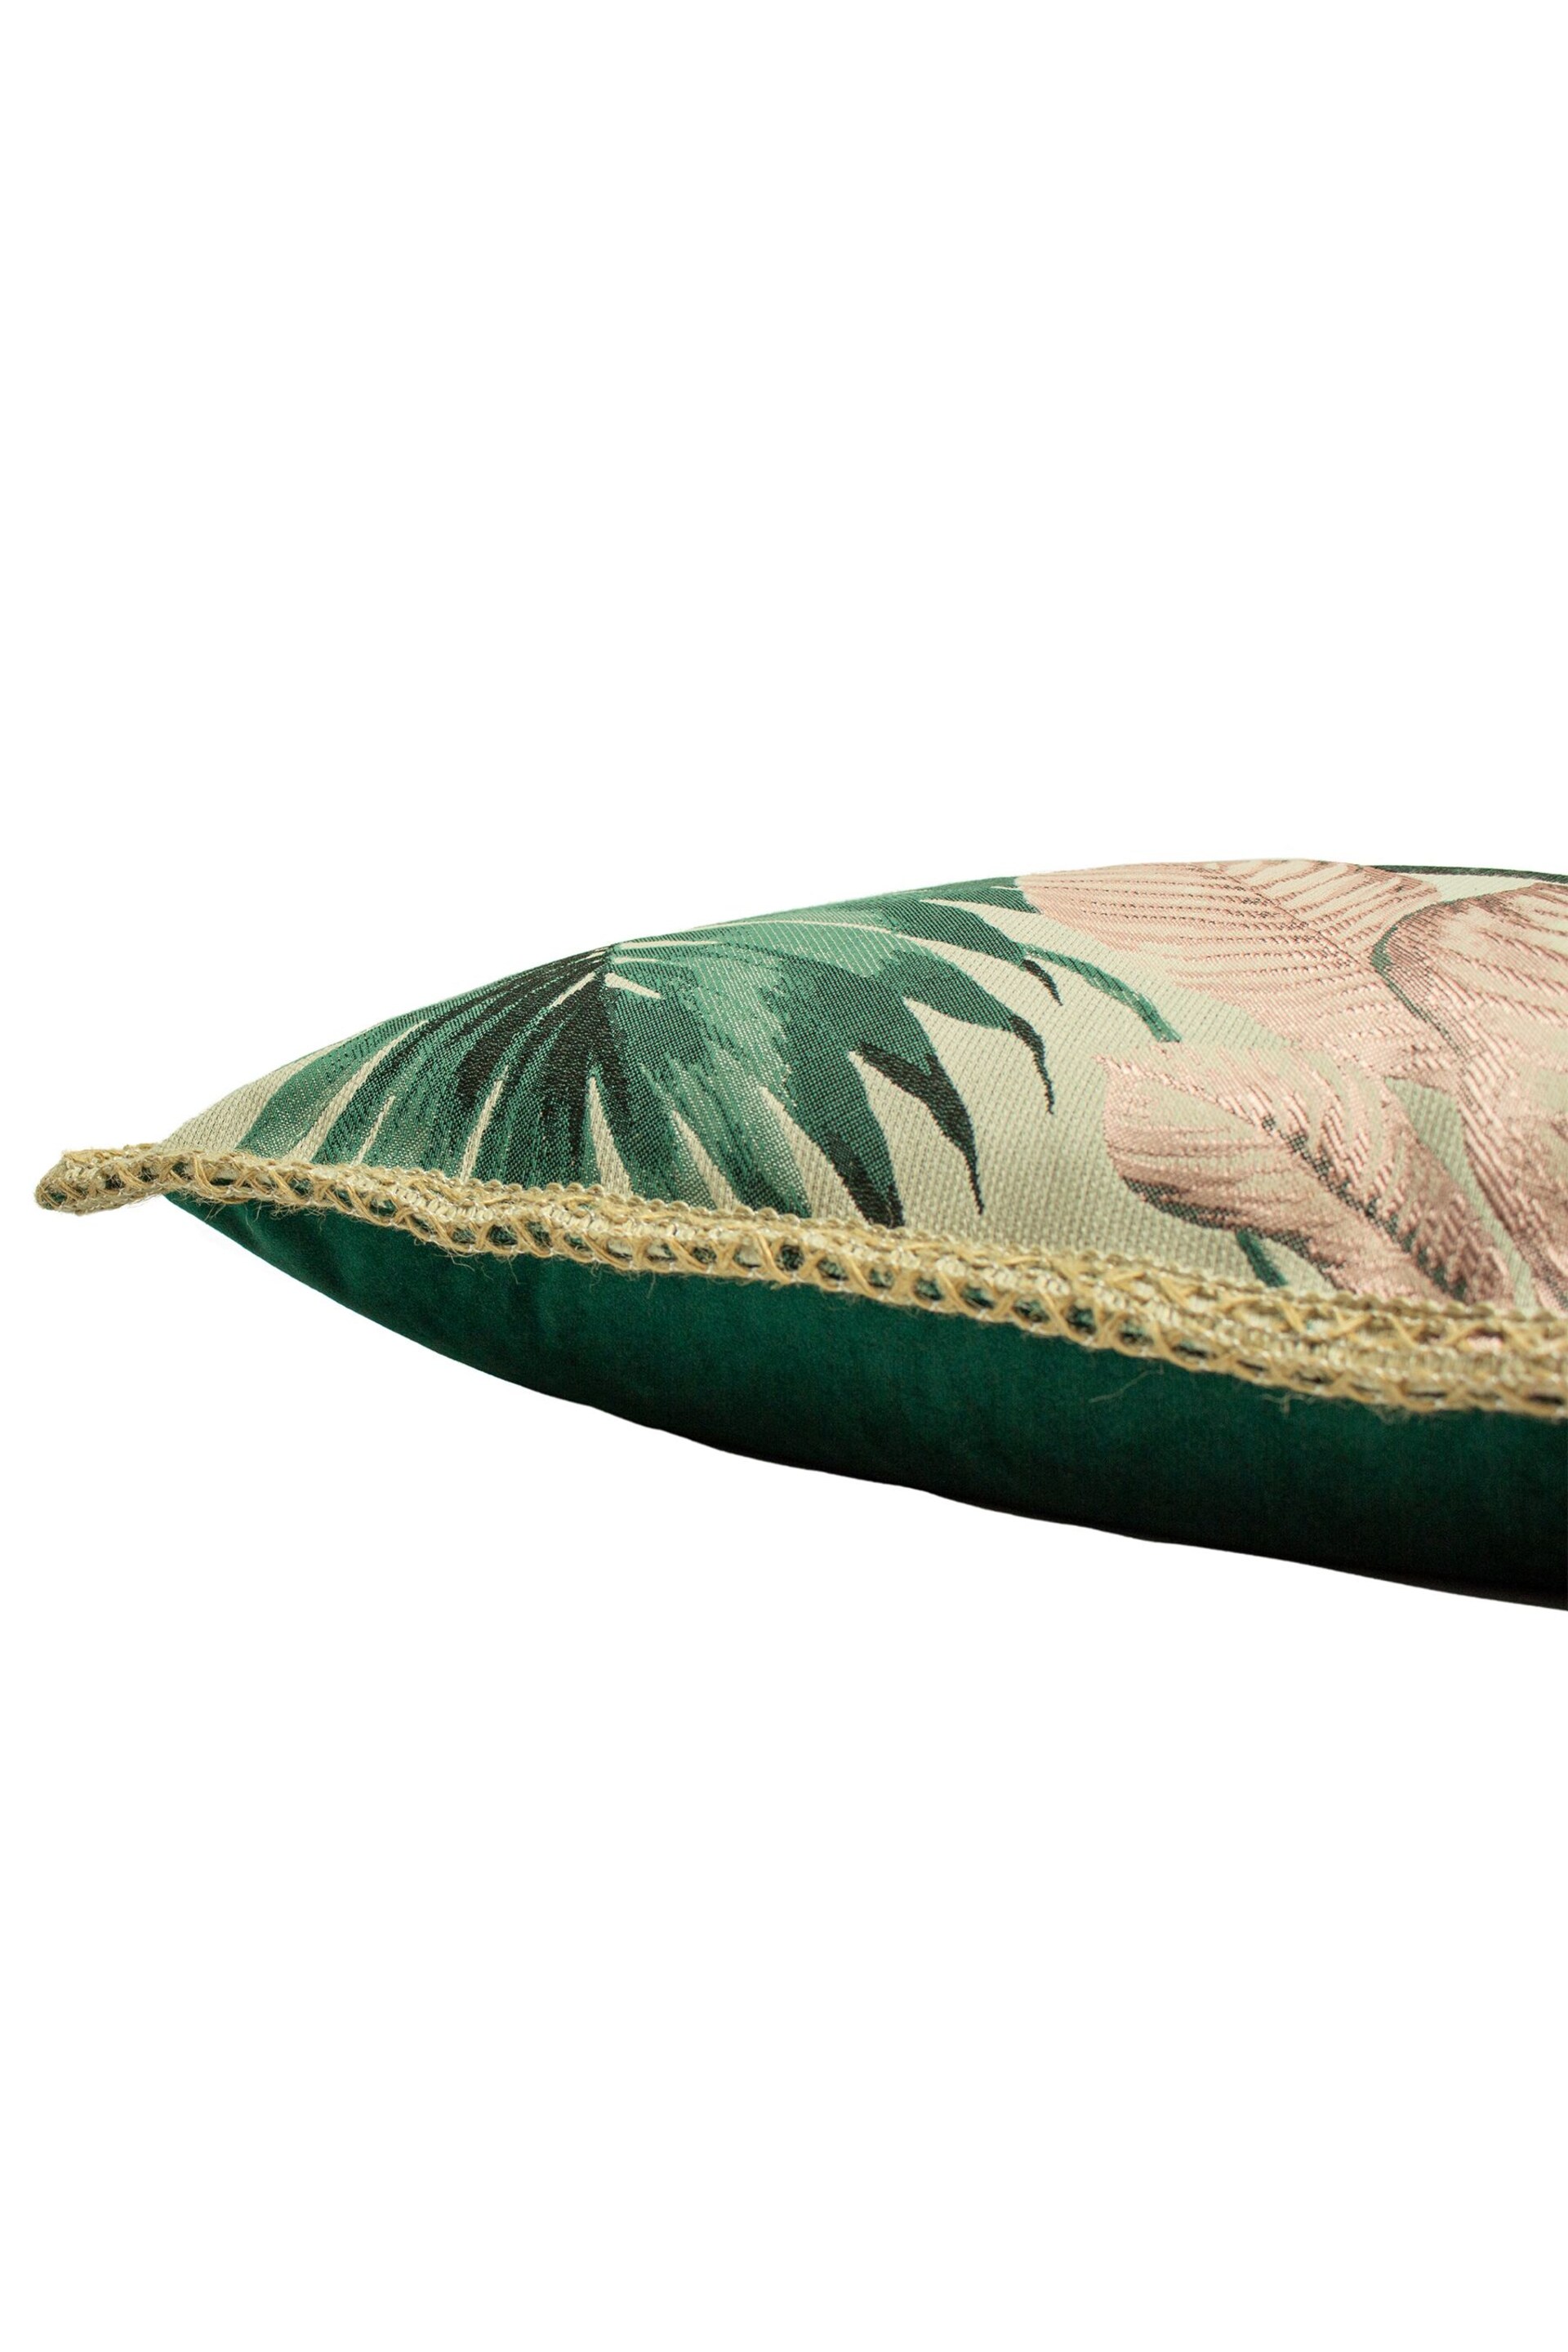 furn. Pink Amazonia Botanical Polyester Filled Cushion - Image 4 of 4